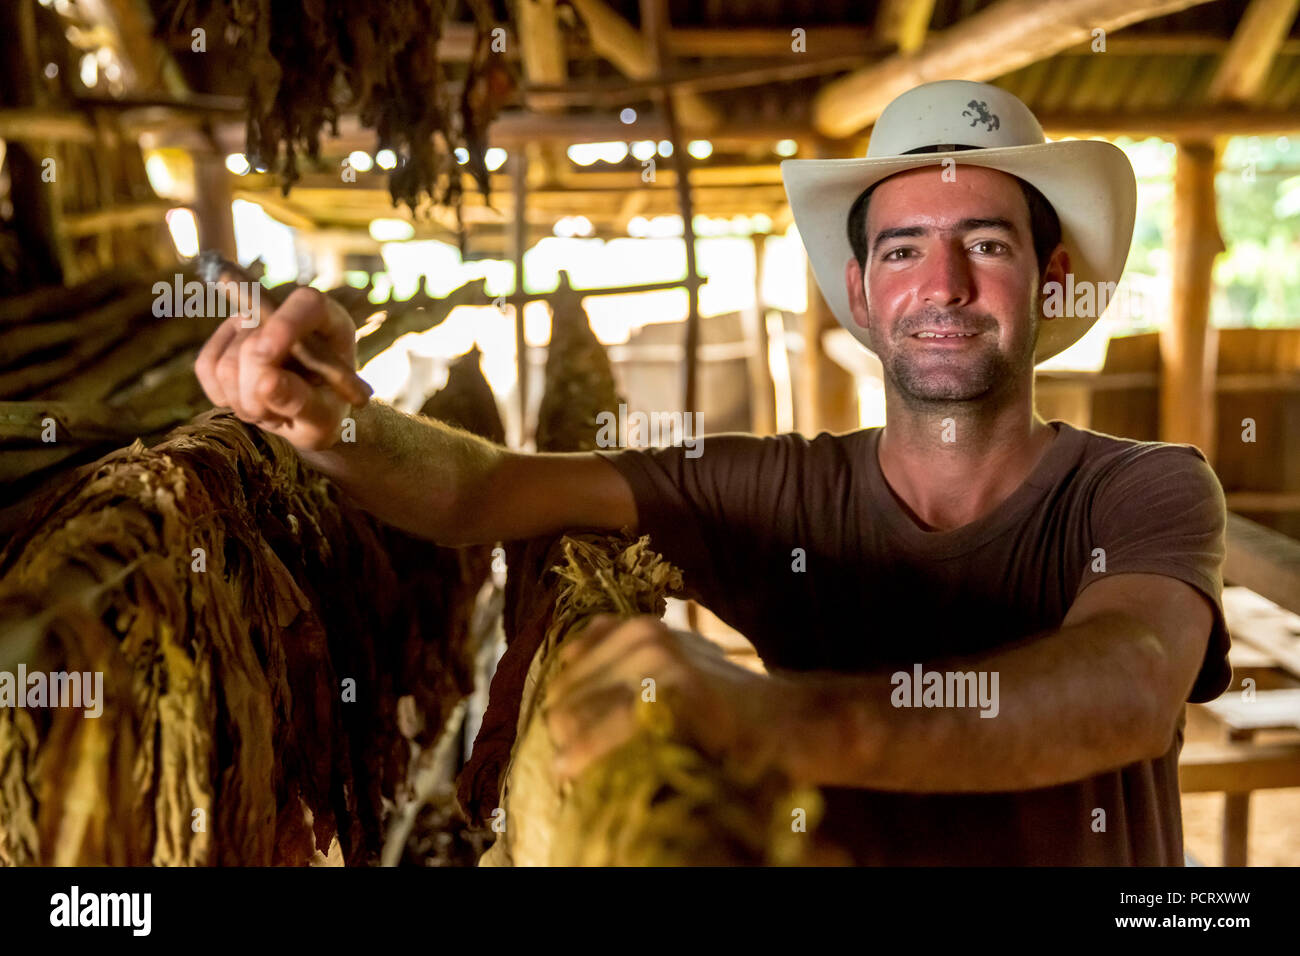 Productores de Tabaco, el tabaco agricultor Luis Manne Alvares Rodrigues se fuma un habano, granja de tabaco en Viñales, Valle de Viñales, Cuba, Pinar del Río, Cuba Foto de stock